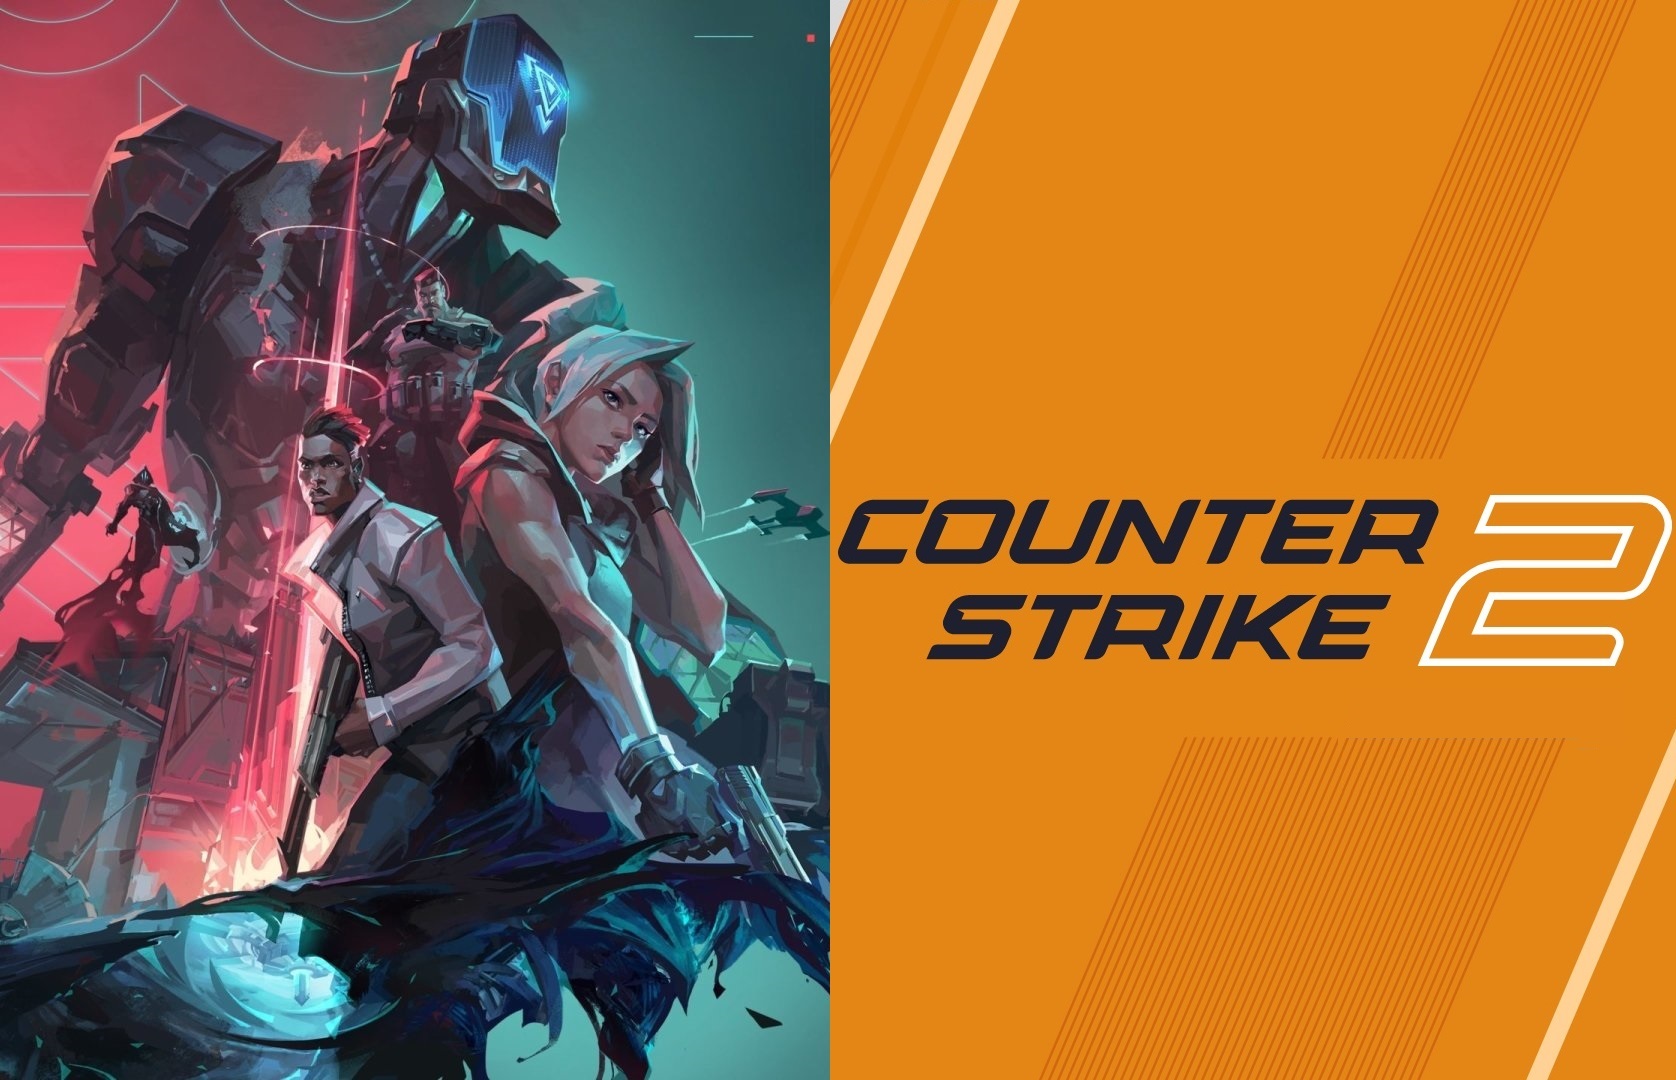 Sự cạnh tranh từ Counter-Strike 2 có thể là điều tốt cho VALORANT?